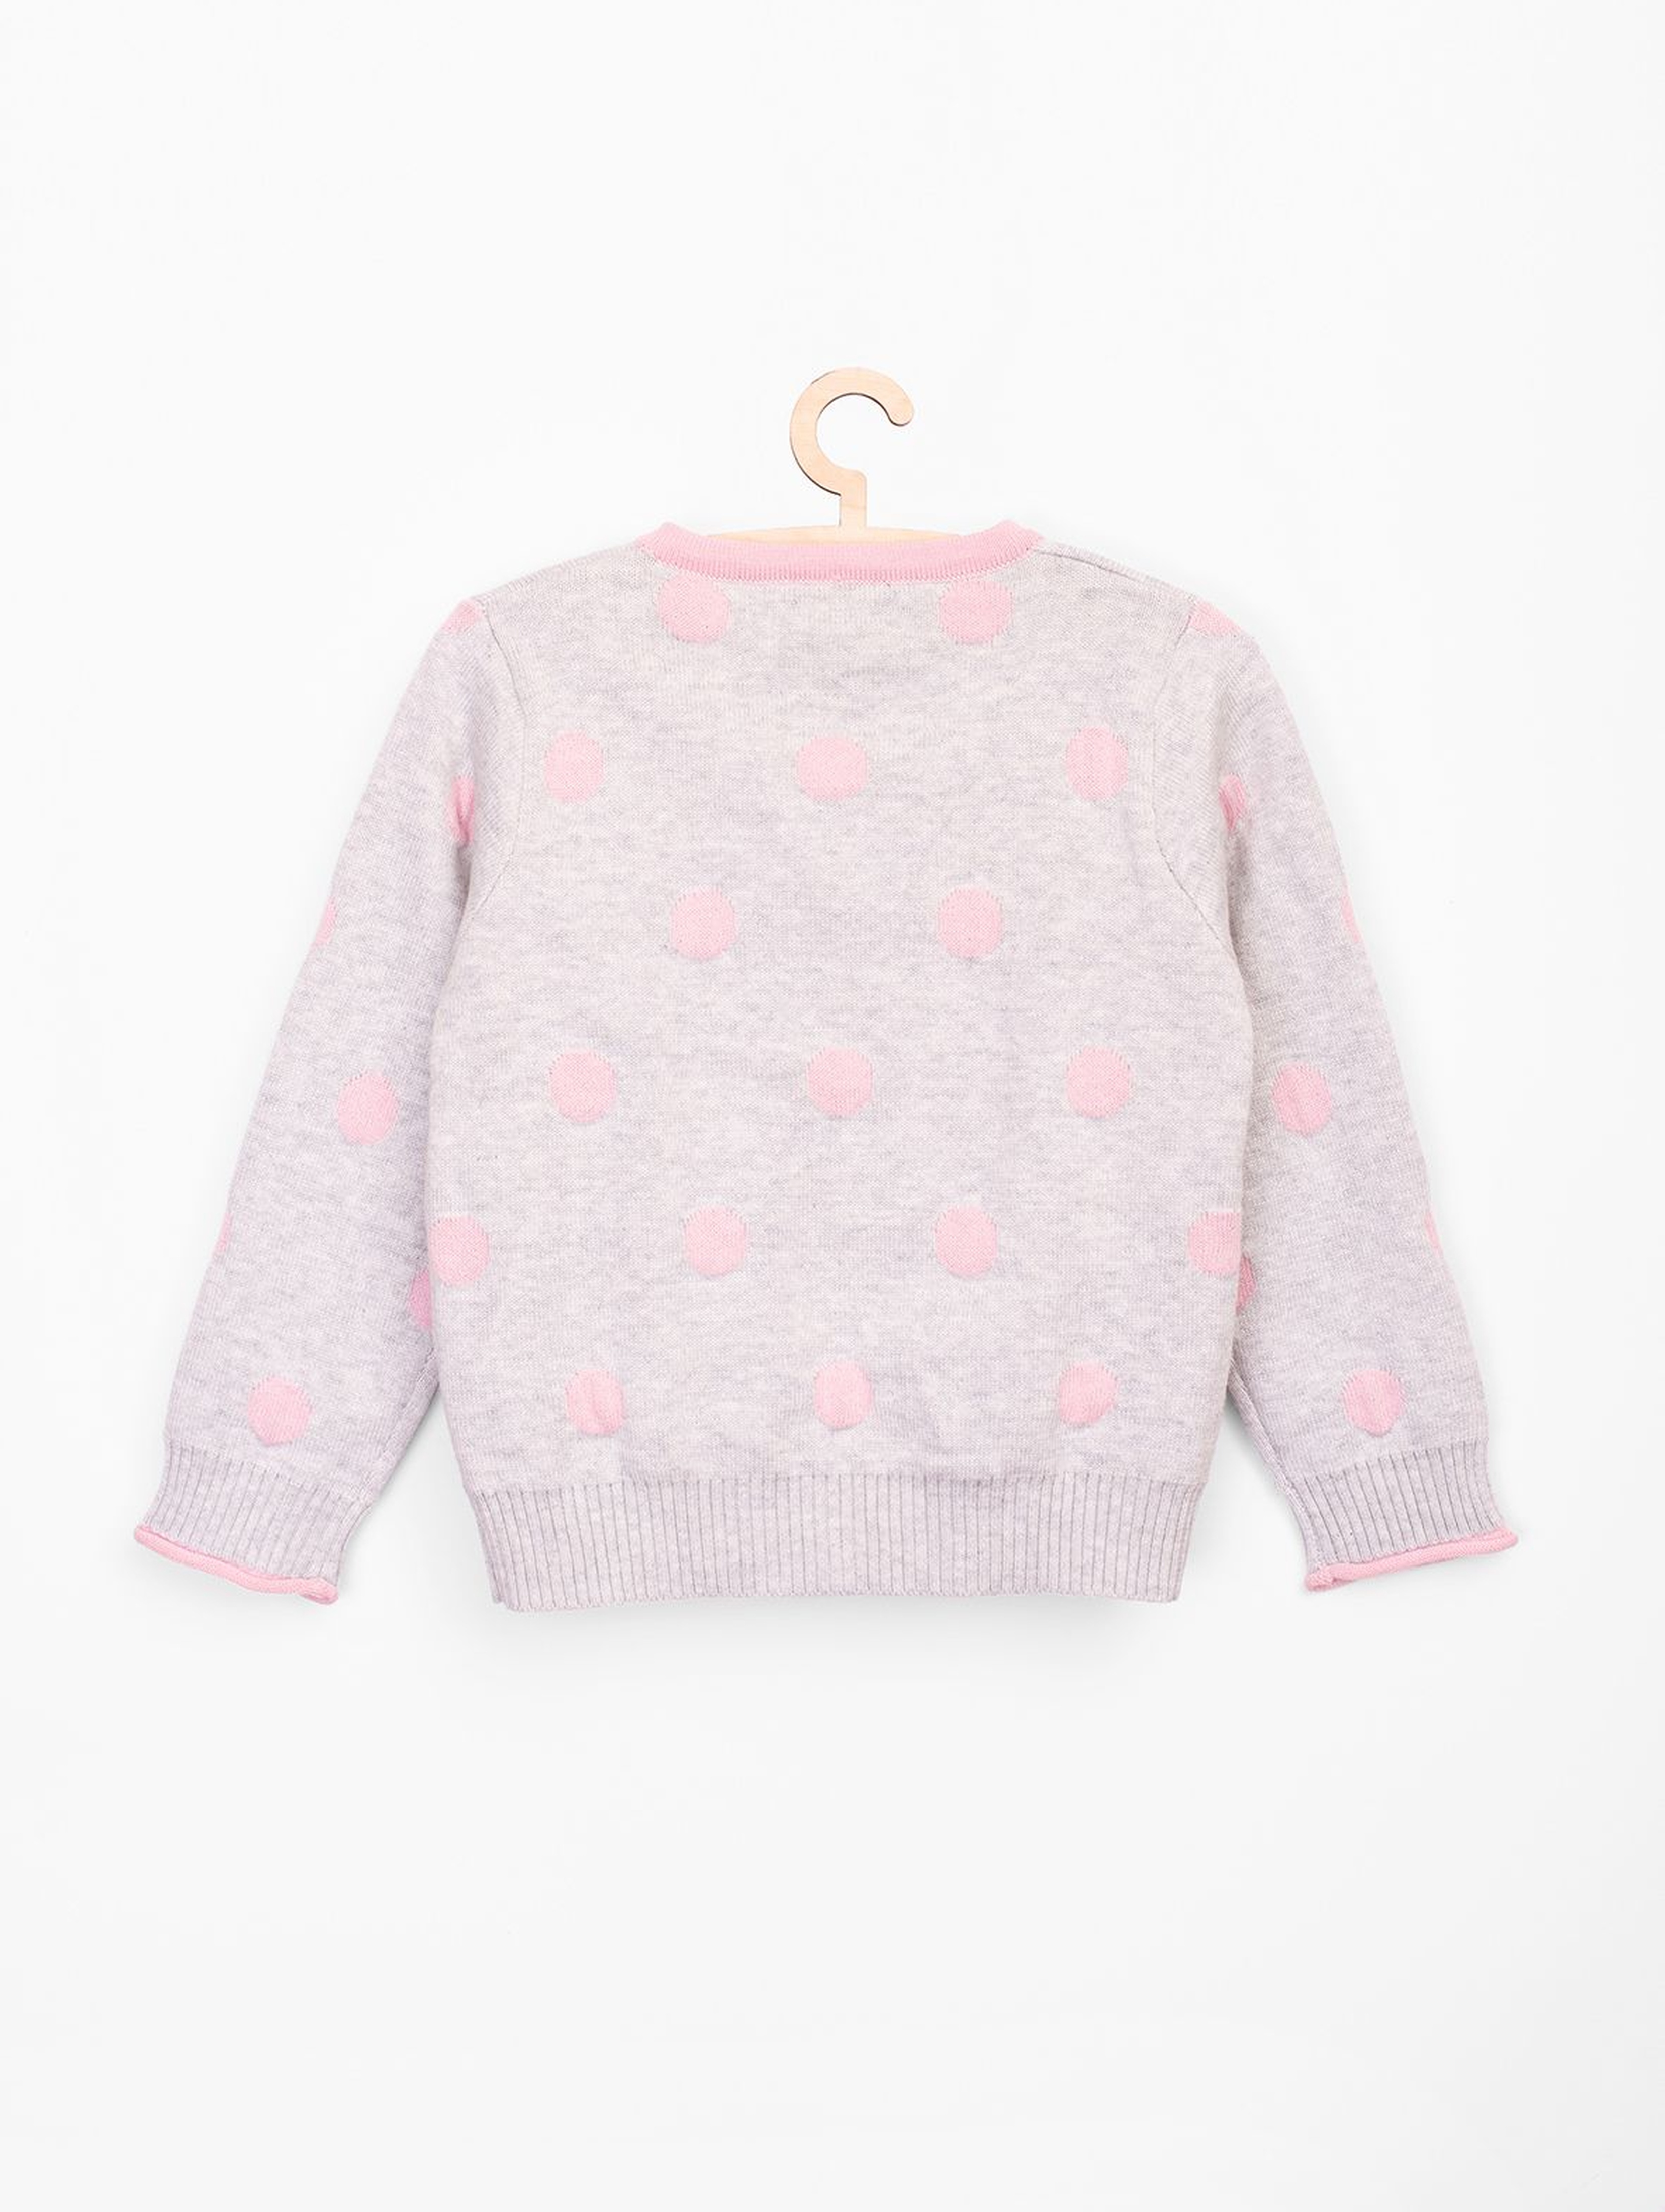 Sweter dla niemowlaka szary w różowe grochy